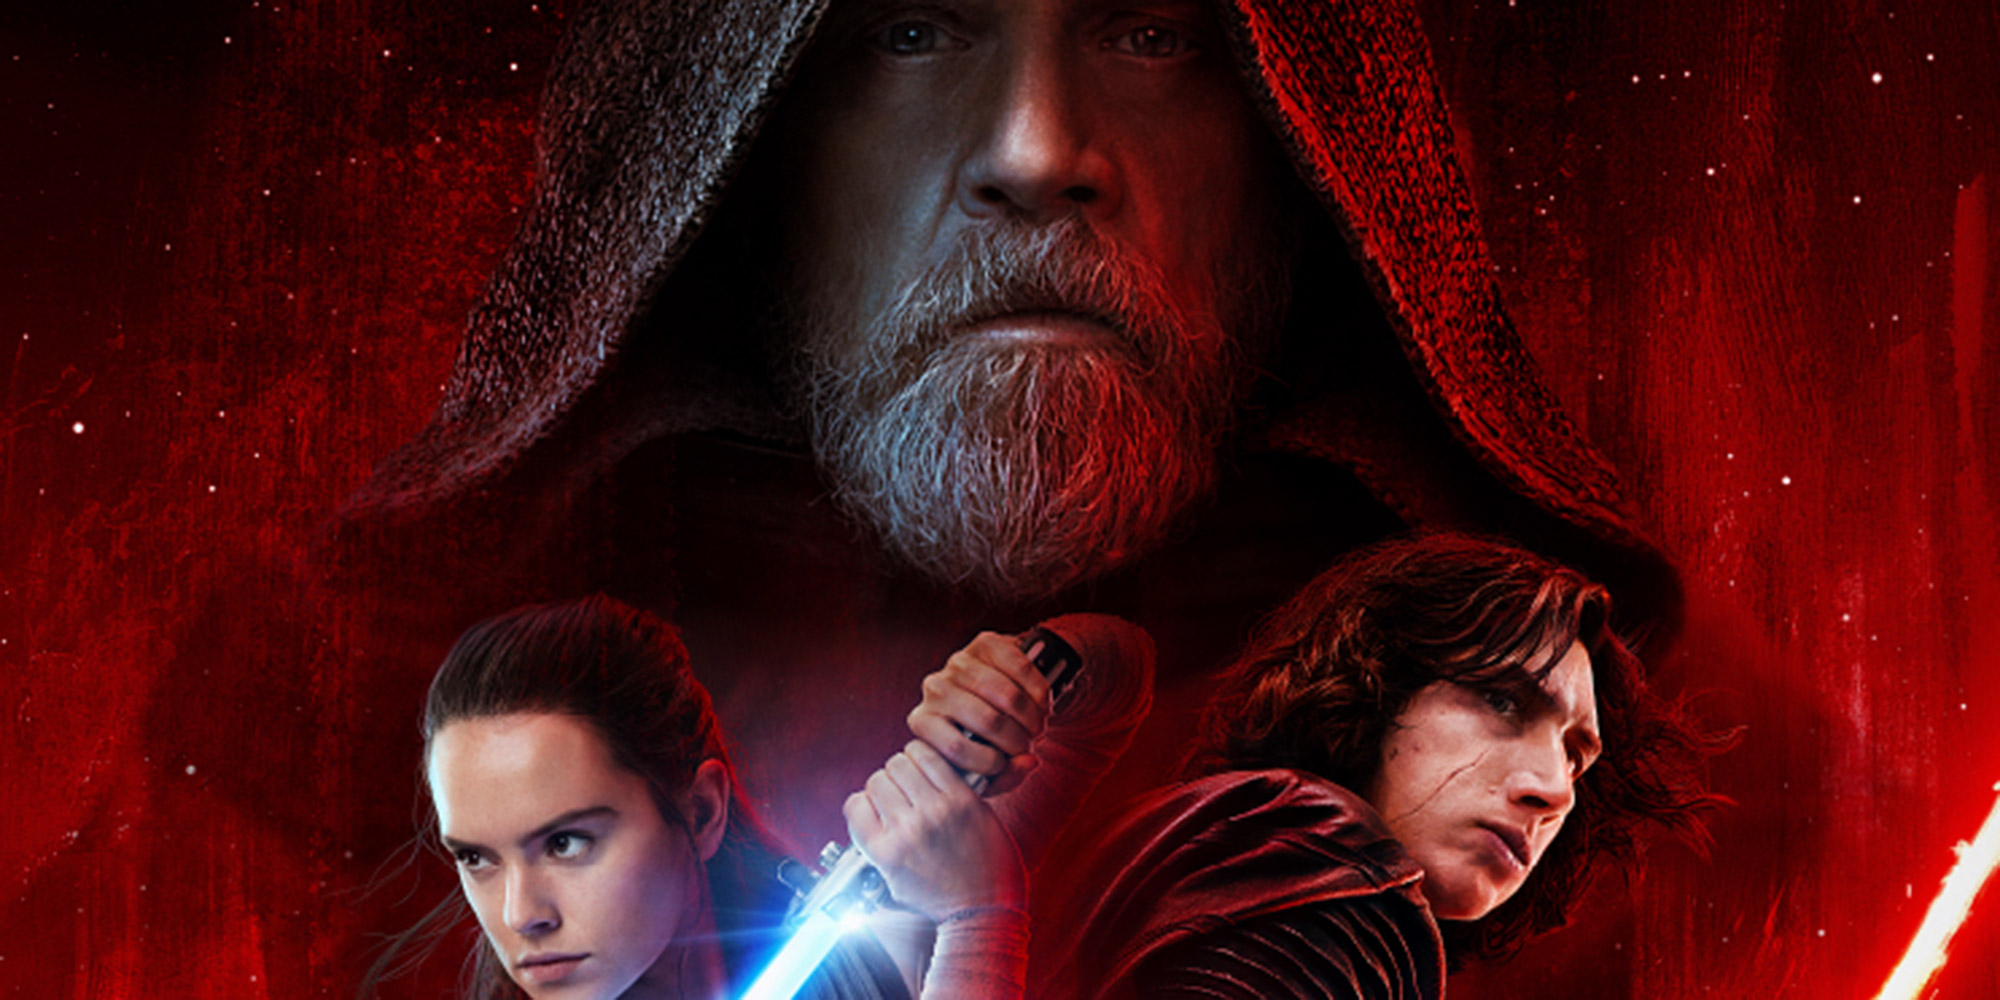  Star Wars : Les Derniers Jedi, une nouvelle bande-annonce tu découvriras…